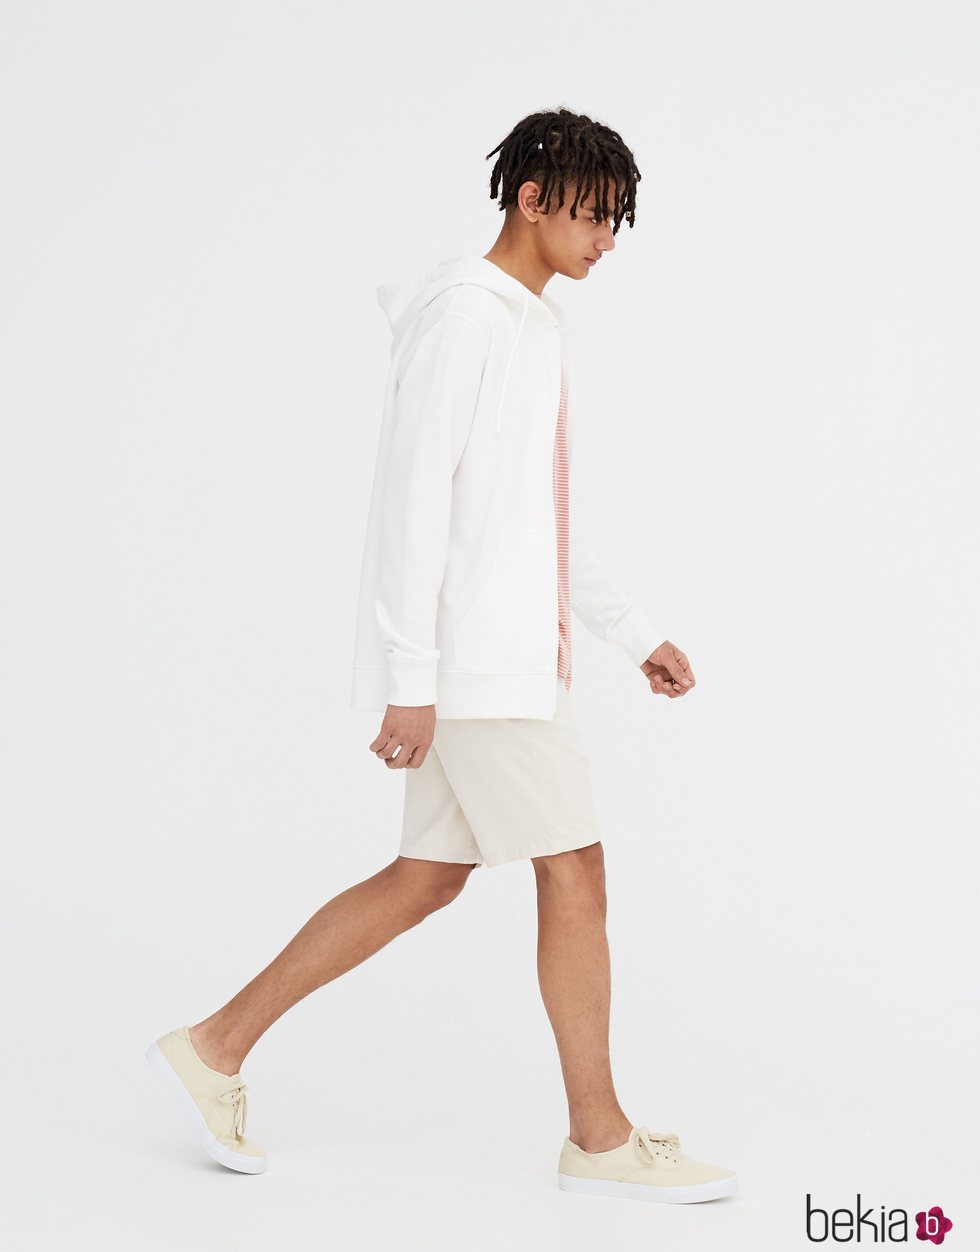 Sudadera blanca con capucha para hombre de la primera colección sostenible de Pull & Bear 2018